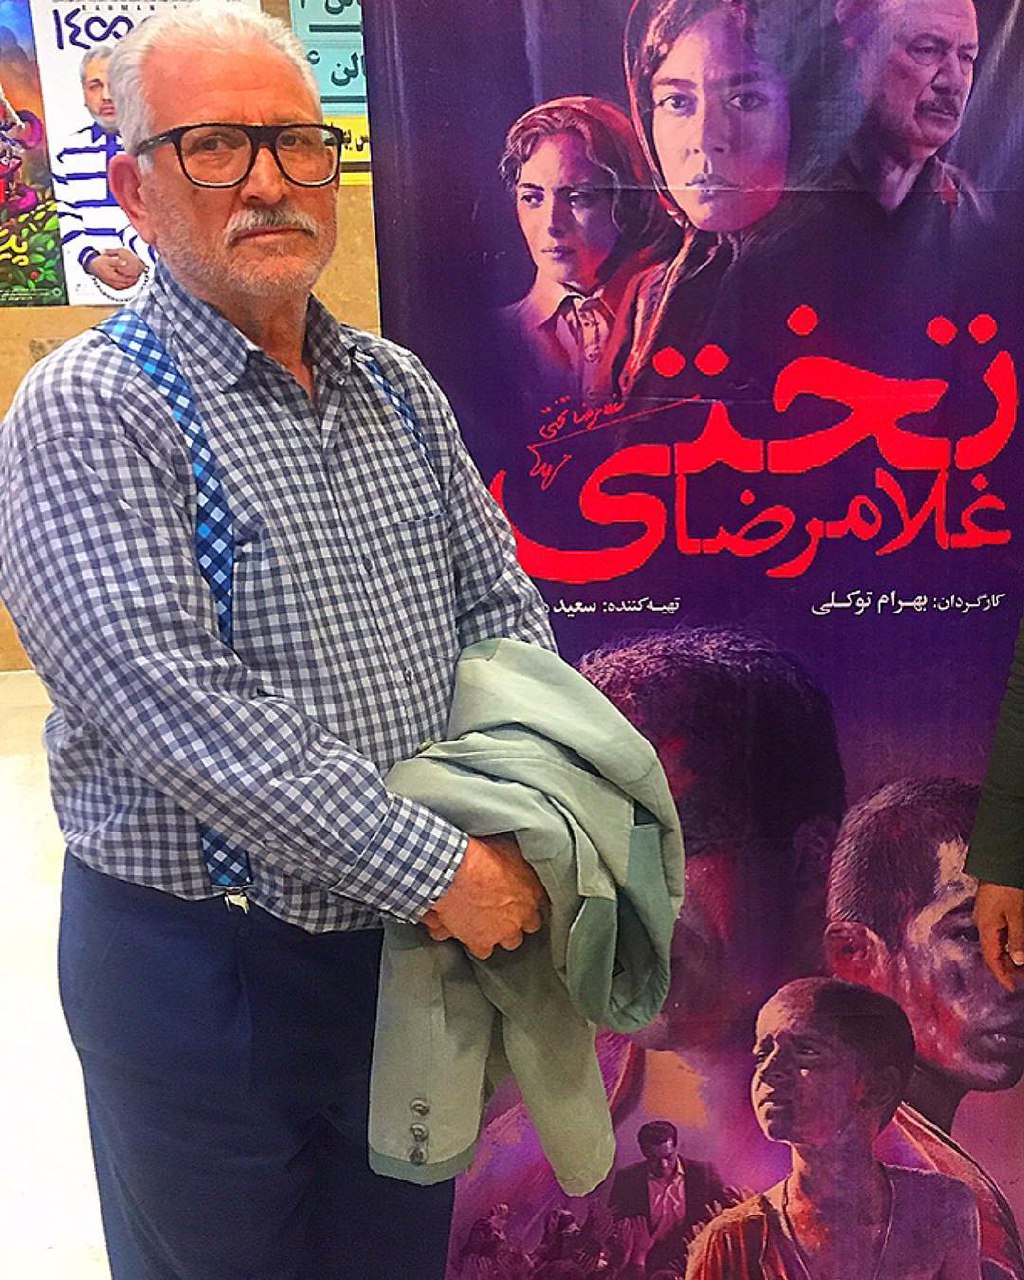  فیلم سینمایی غلامرضا تختی به کارگردانی بهرام توکلی